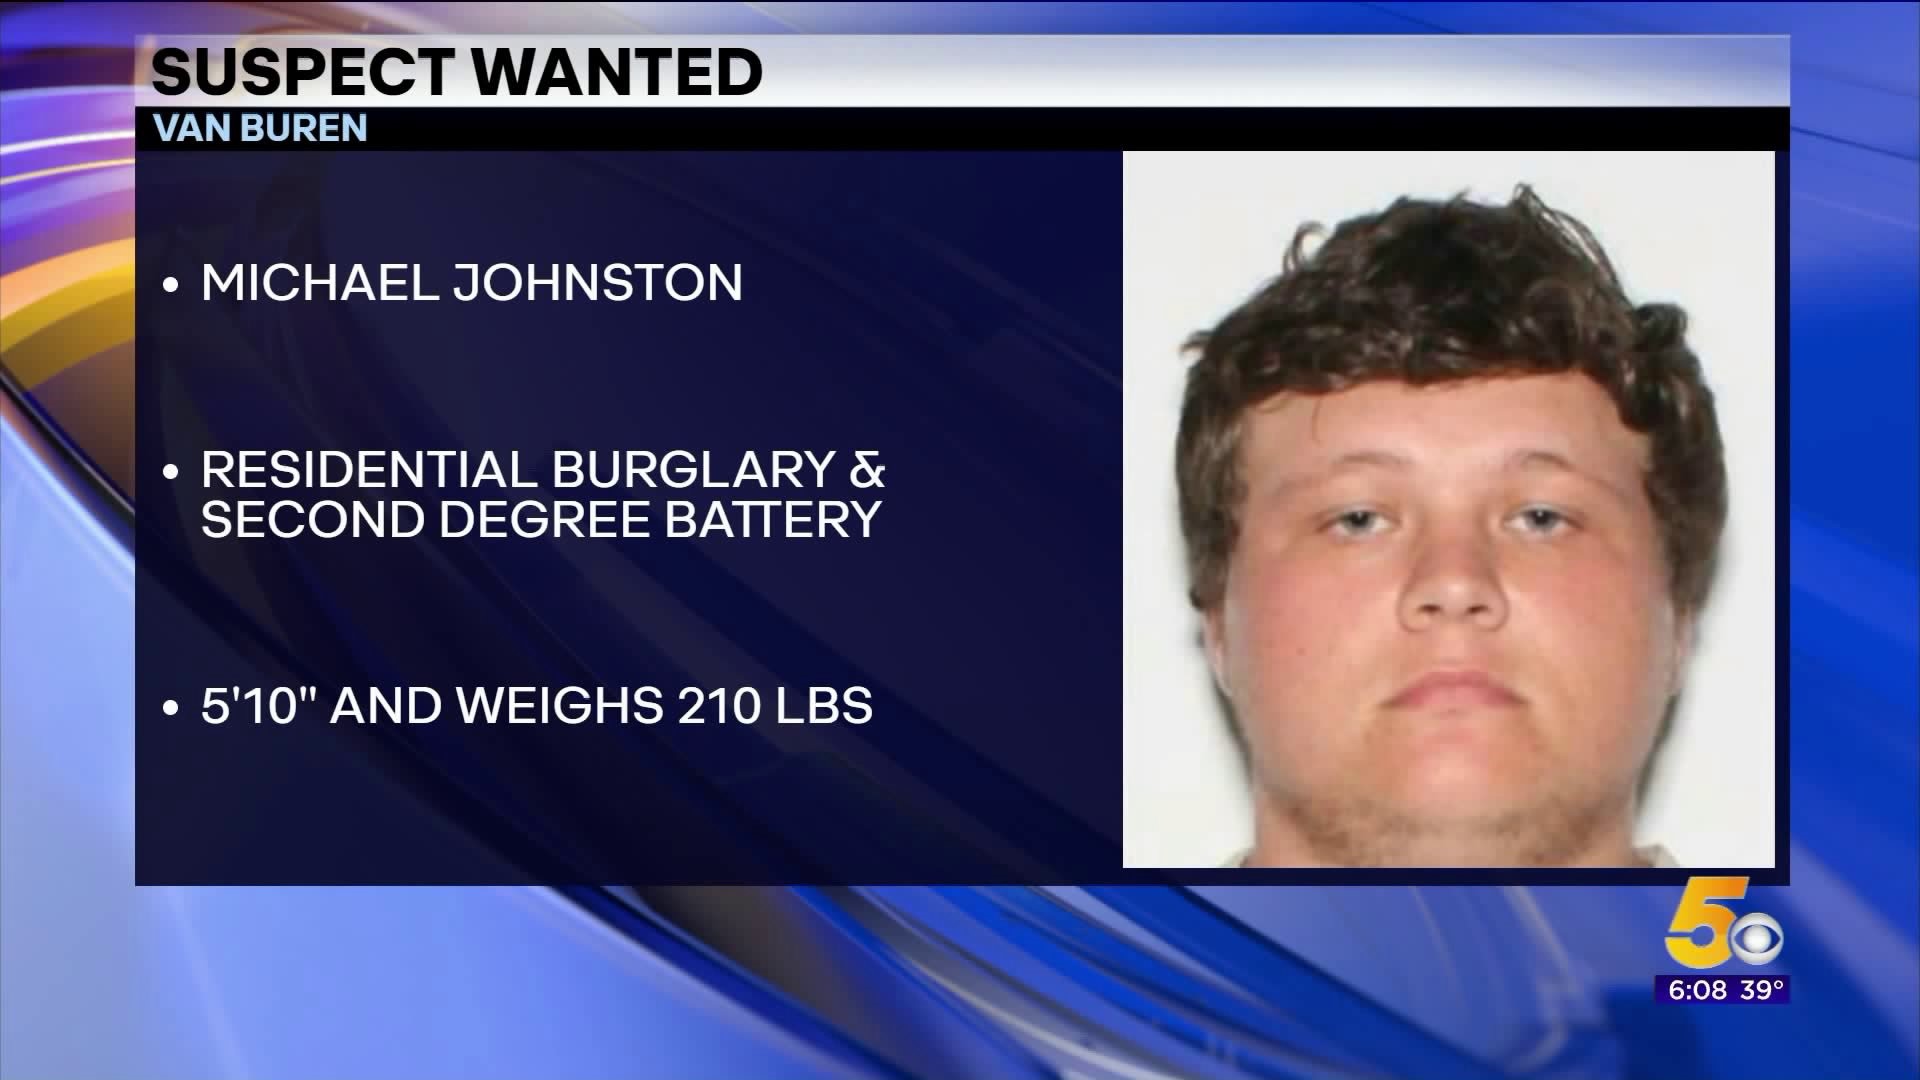 Man Wanted In Van Buren For Burglary